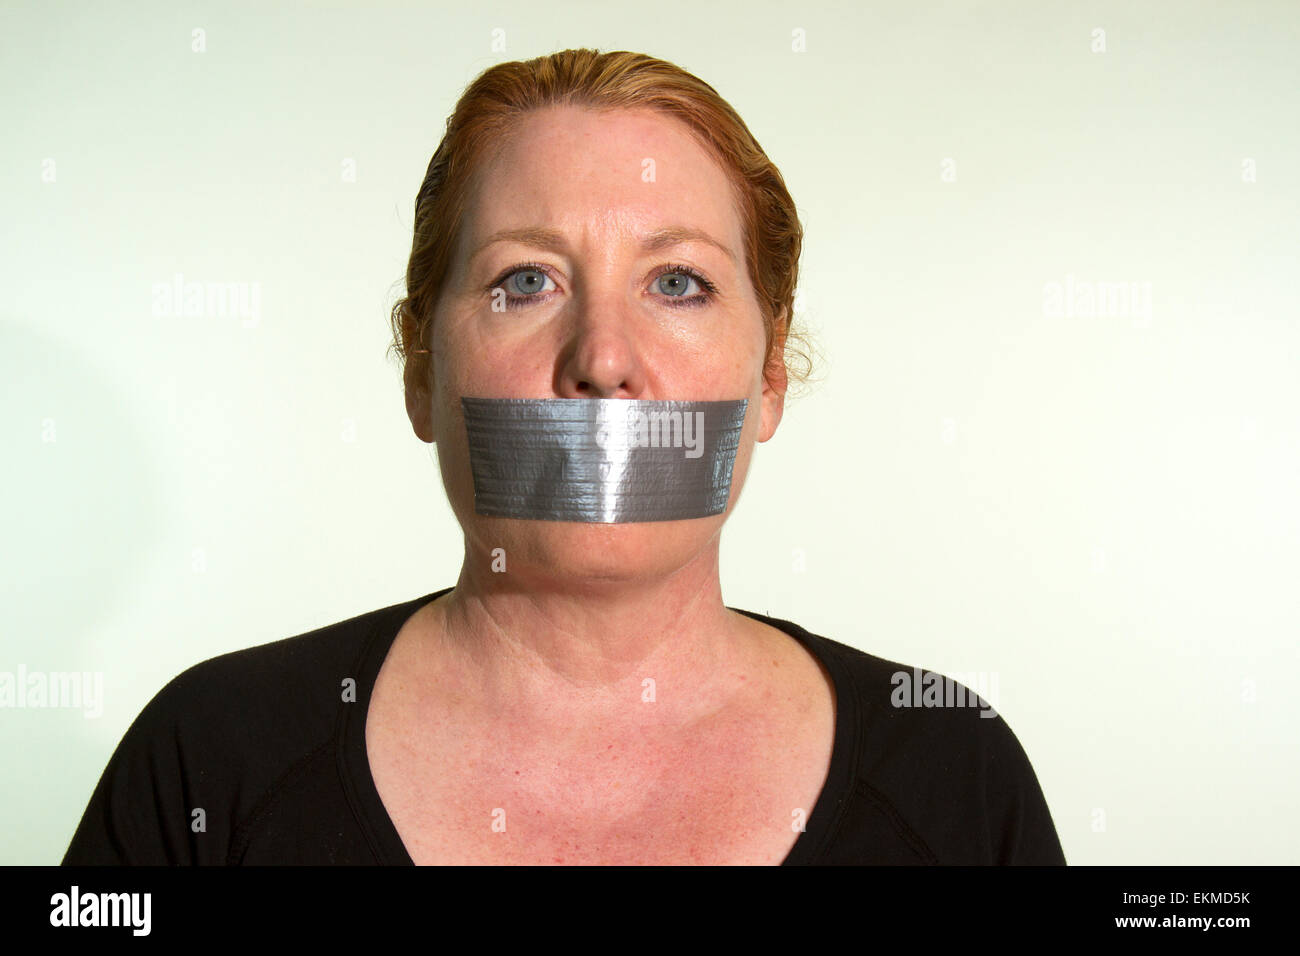 Zensur des Ausdrucks drückte von einer Frau mit Klebeband über den Mund Stockfoto